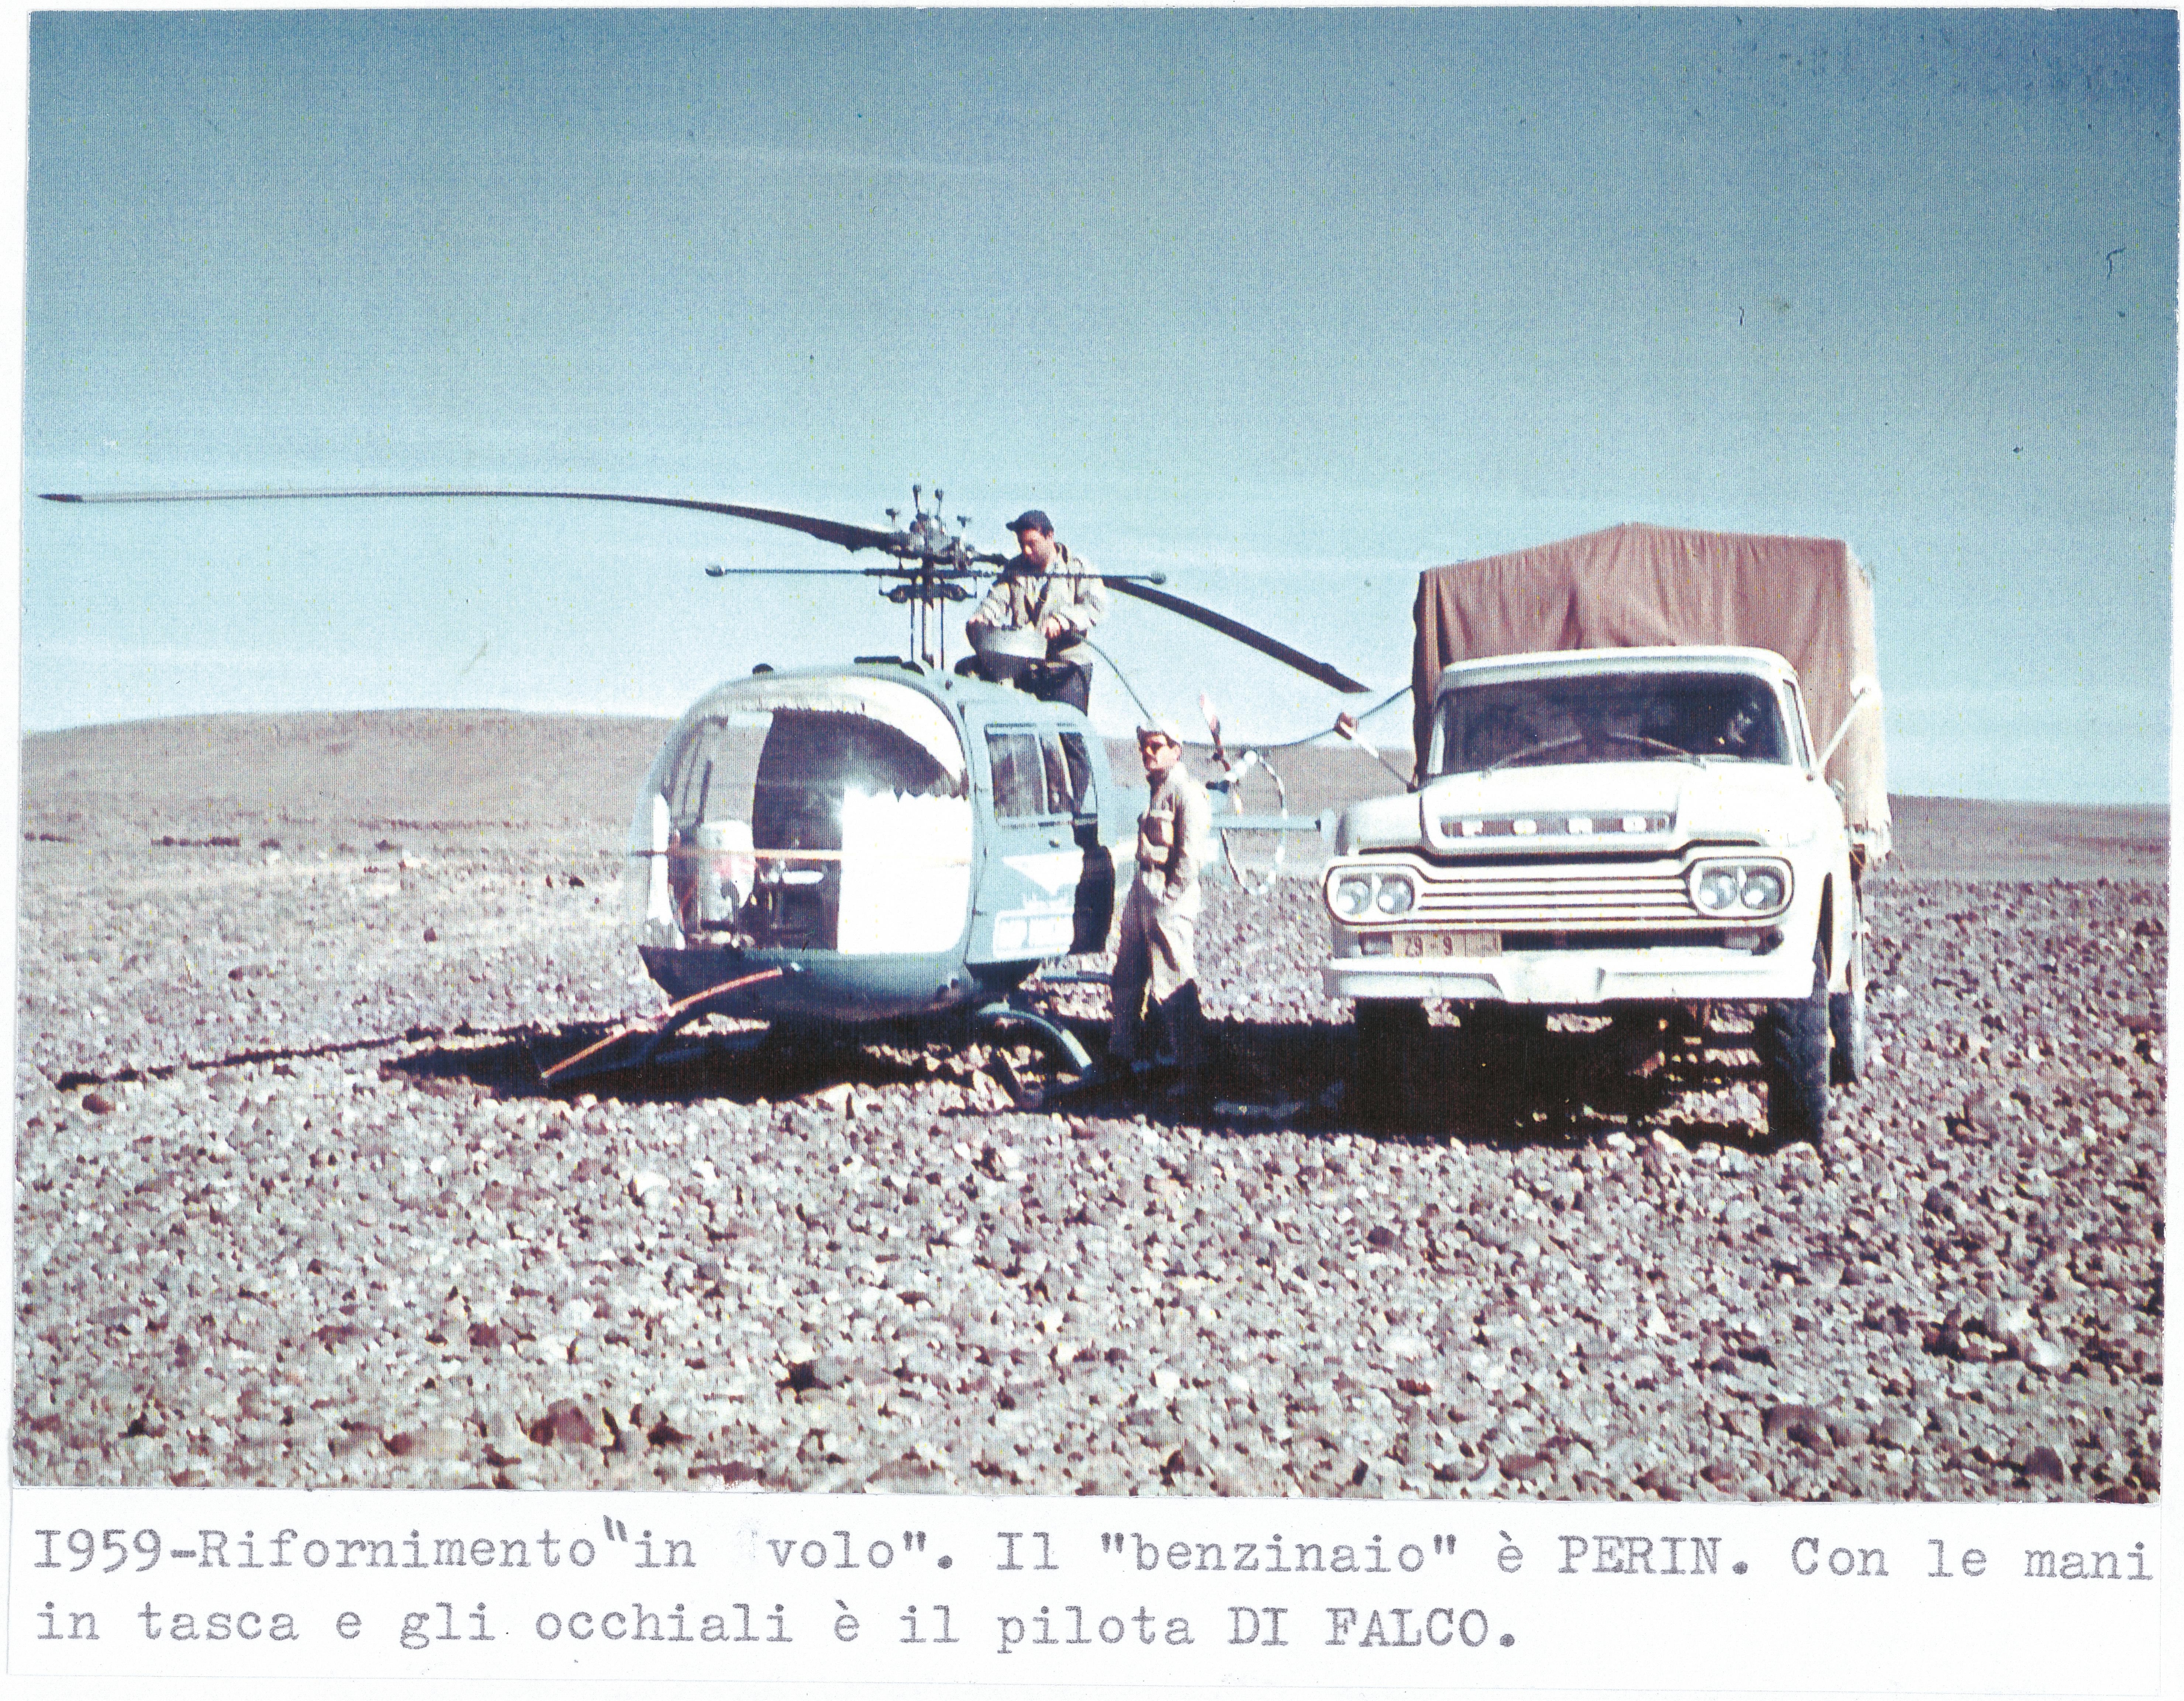 Rifornimento dell’elicottero dell’Agip mineraria. Marocco, 1959 (Archivio storico Eni)